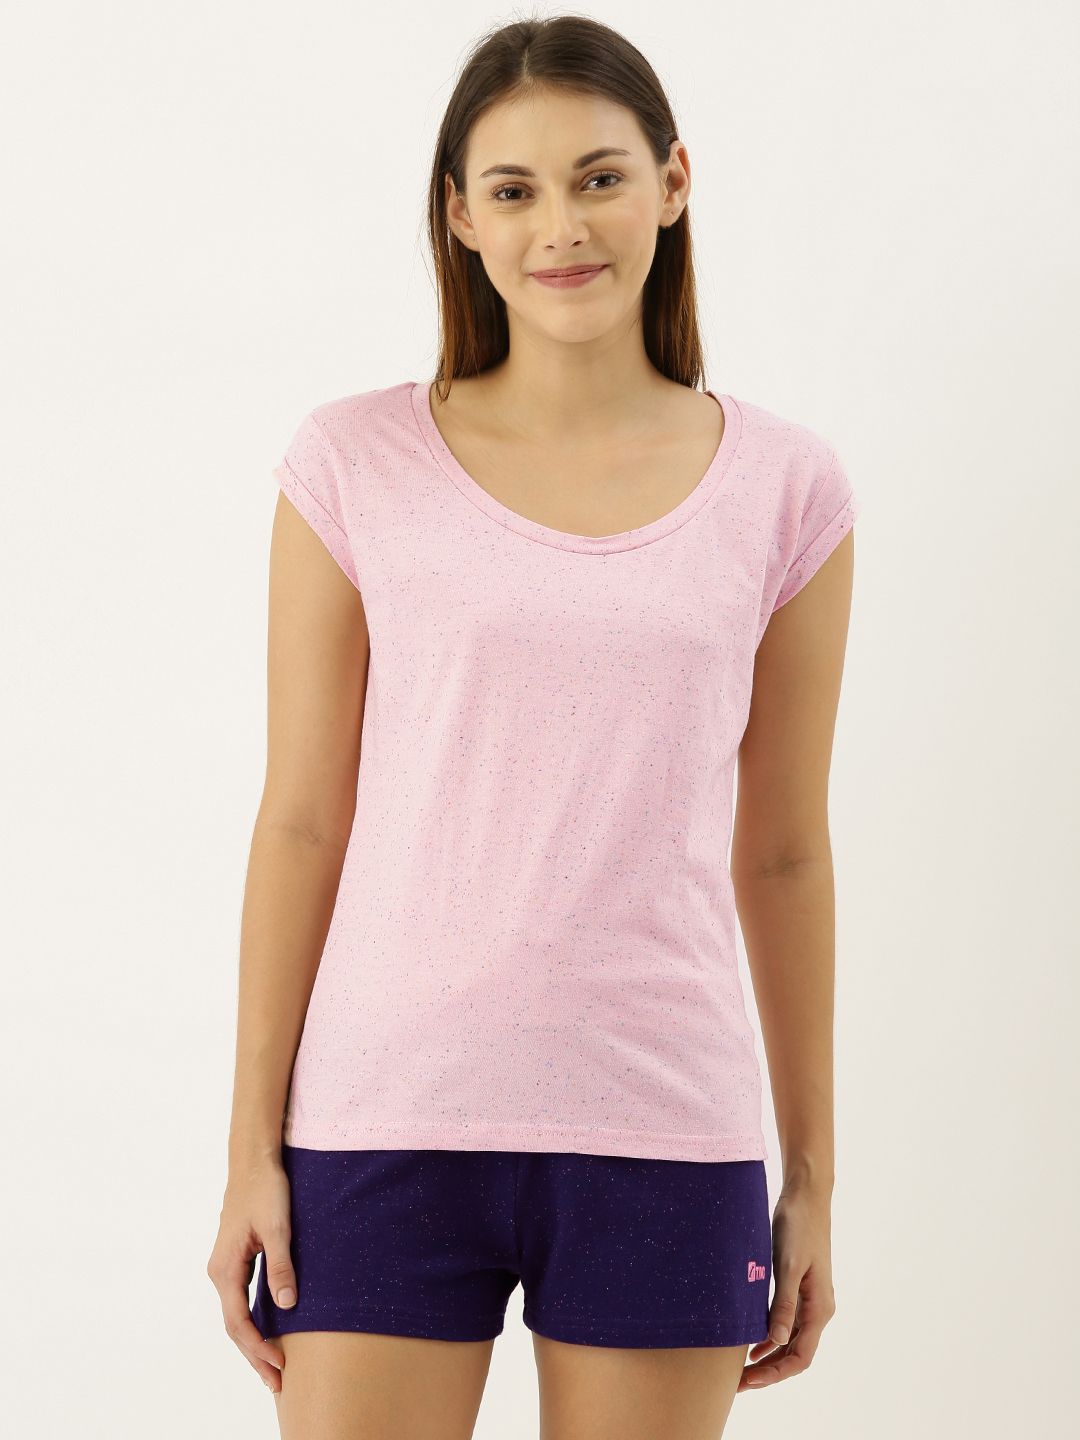 Slumber Jill Women Pink Self-Design Lounge Tshirt FWAT173 Price in India